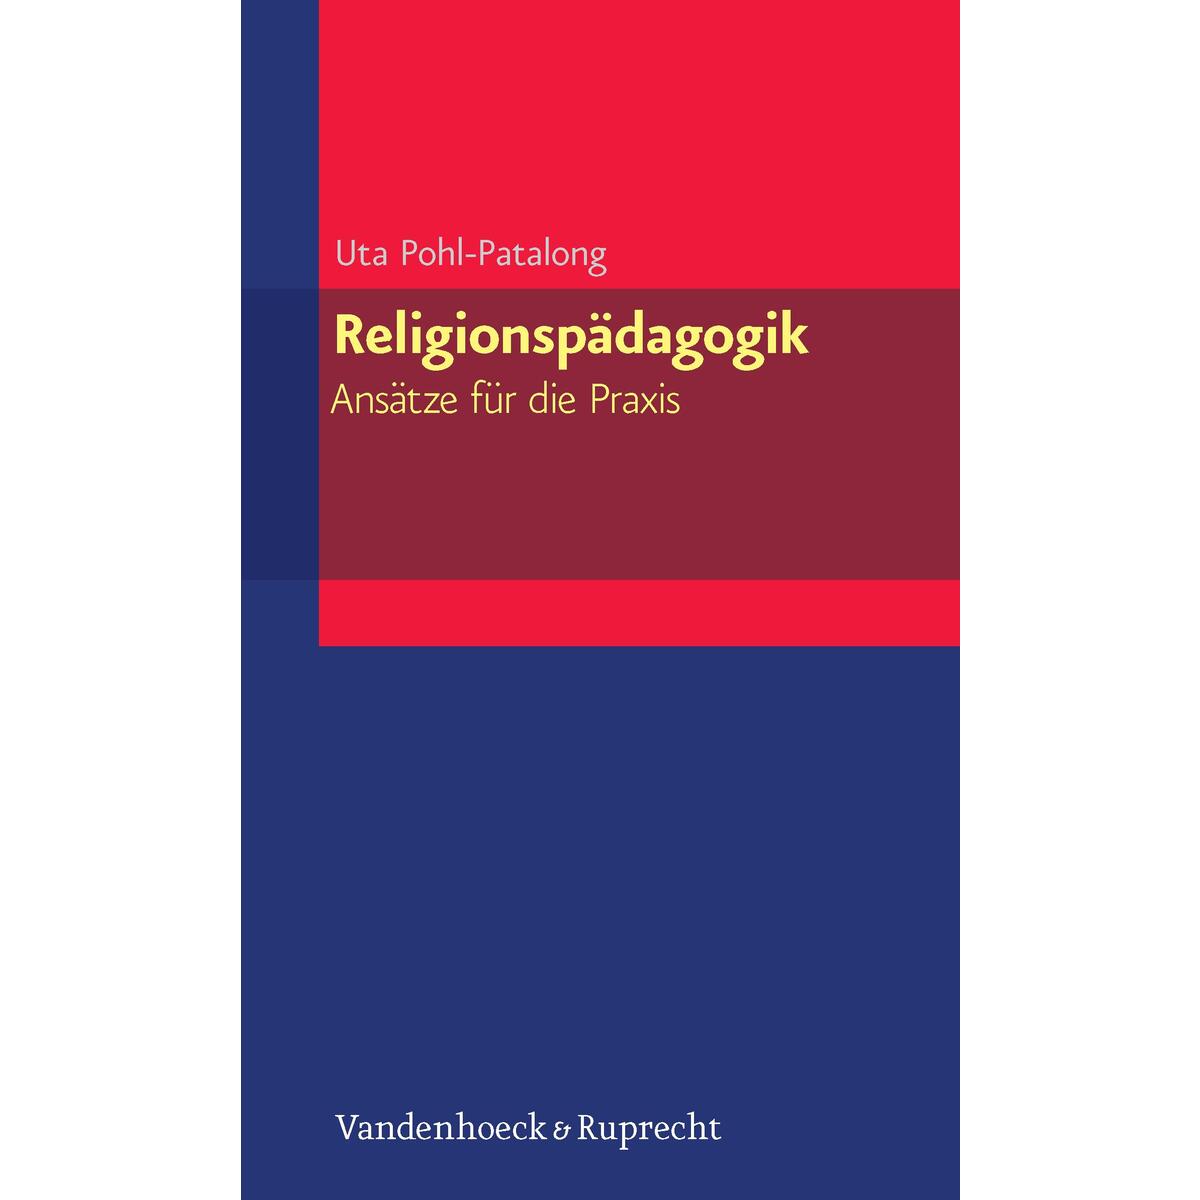 Religionspädagogik - Ansätze für die Praxis von Vandenhoeck + Ruprecht